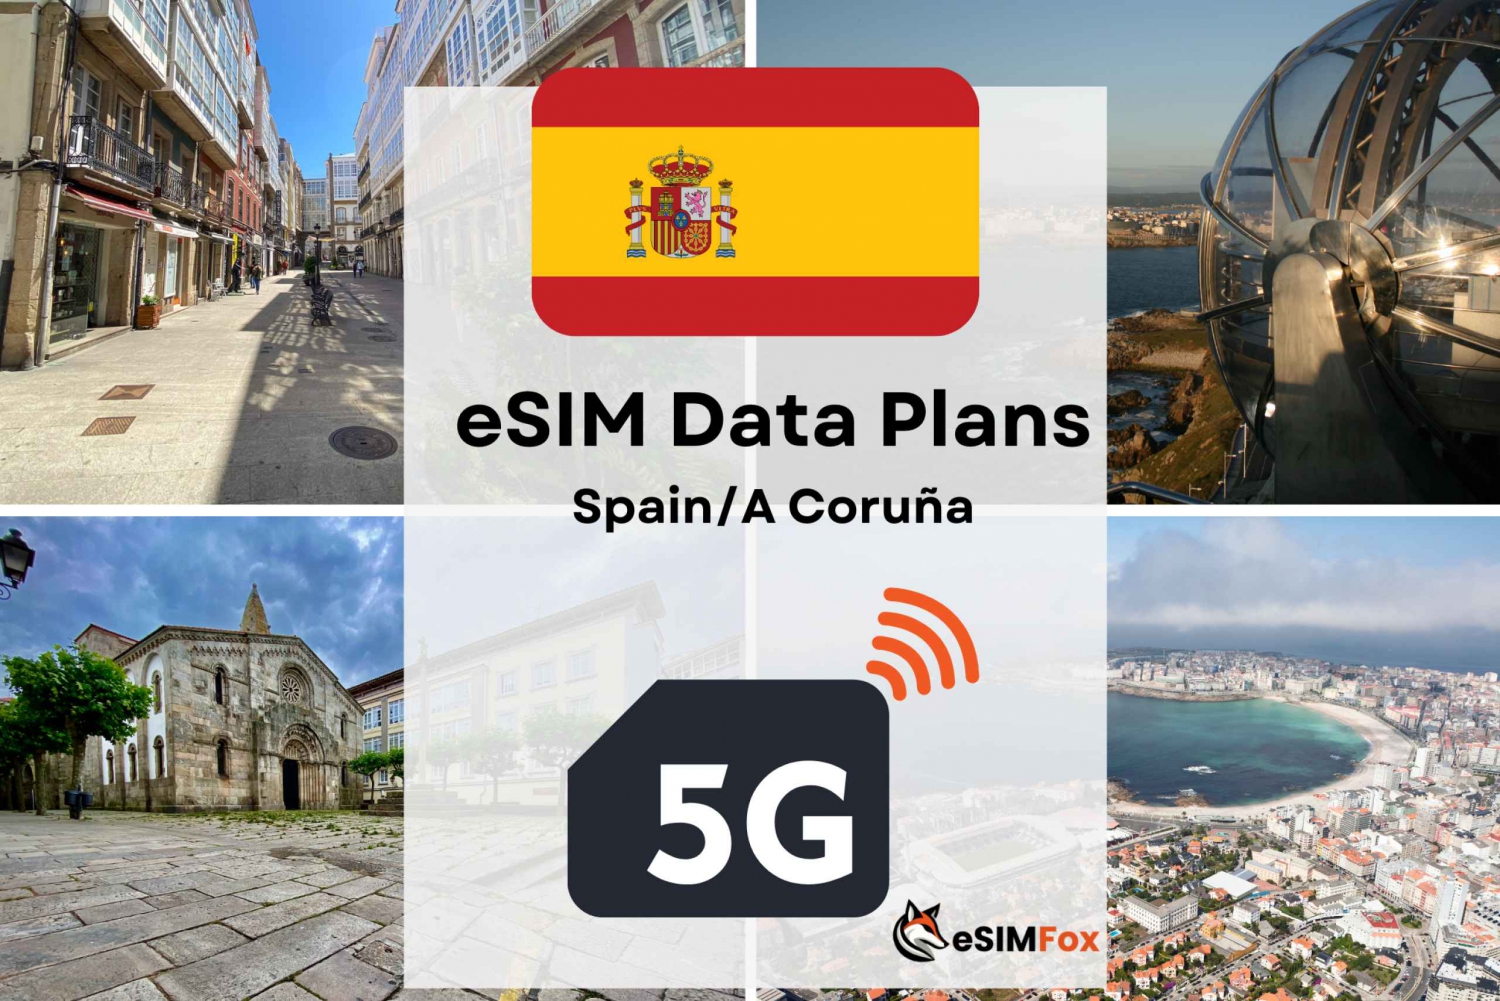 A Coruna: eSIM internet data abonnement voor Spanje 4G/5G